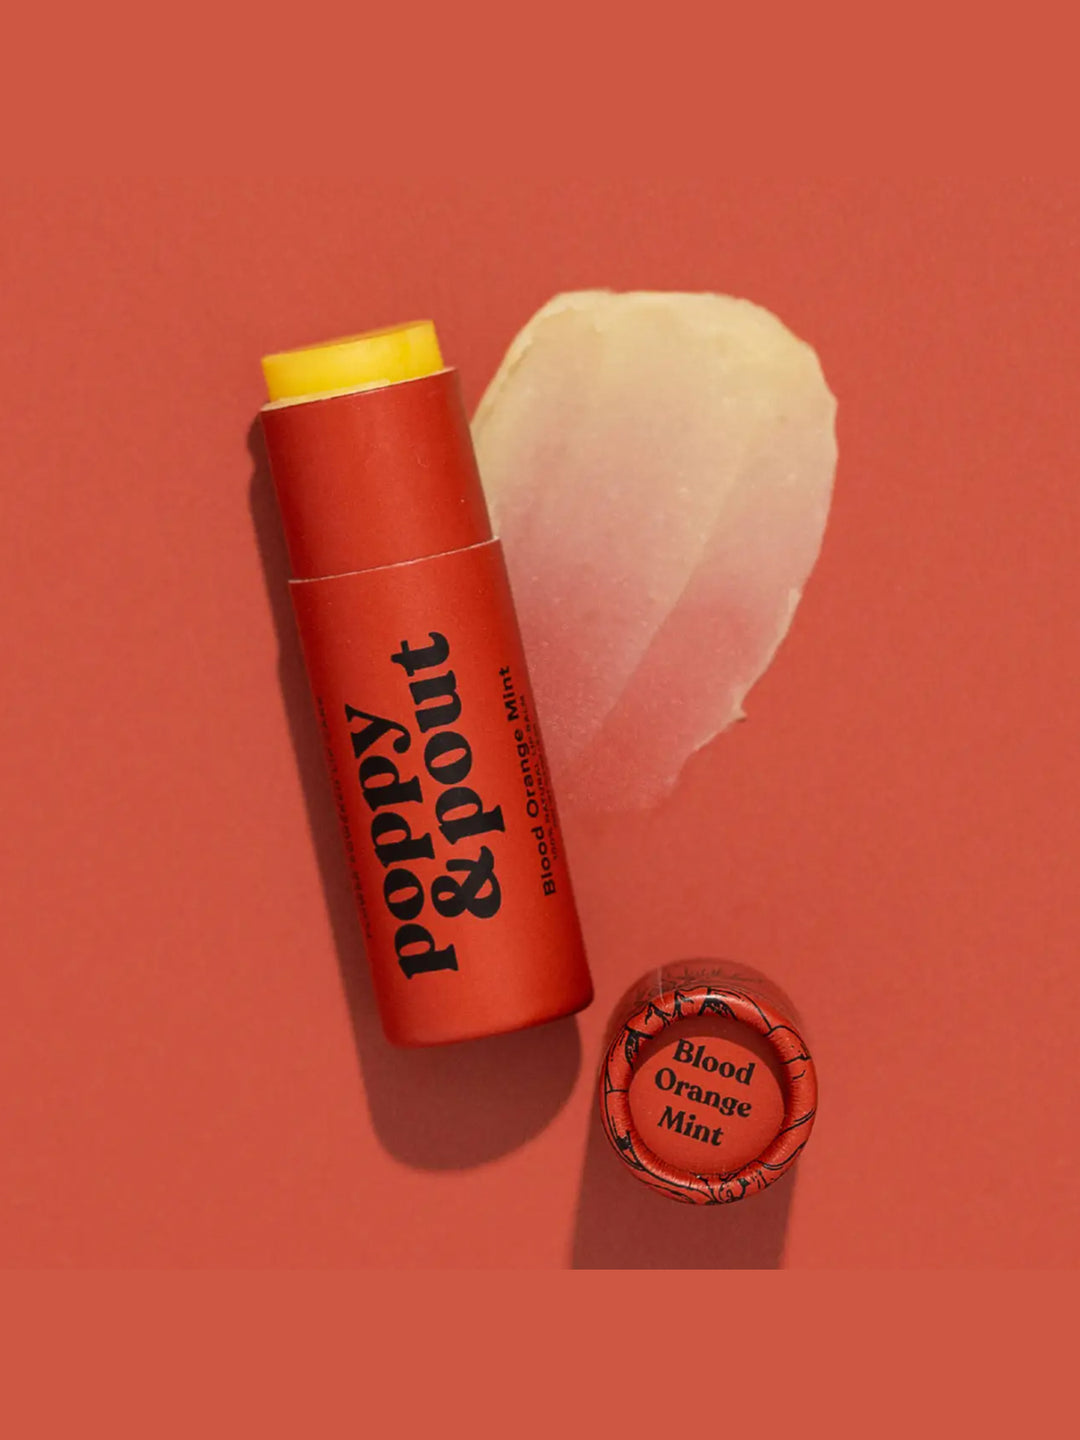 Lip Balm in Blood Orange Mint